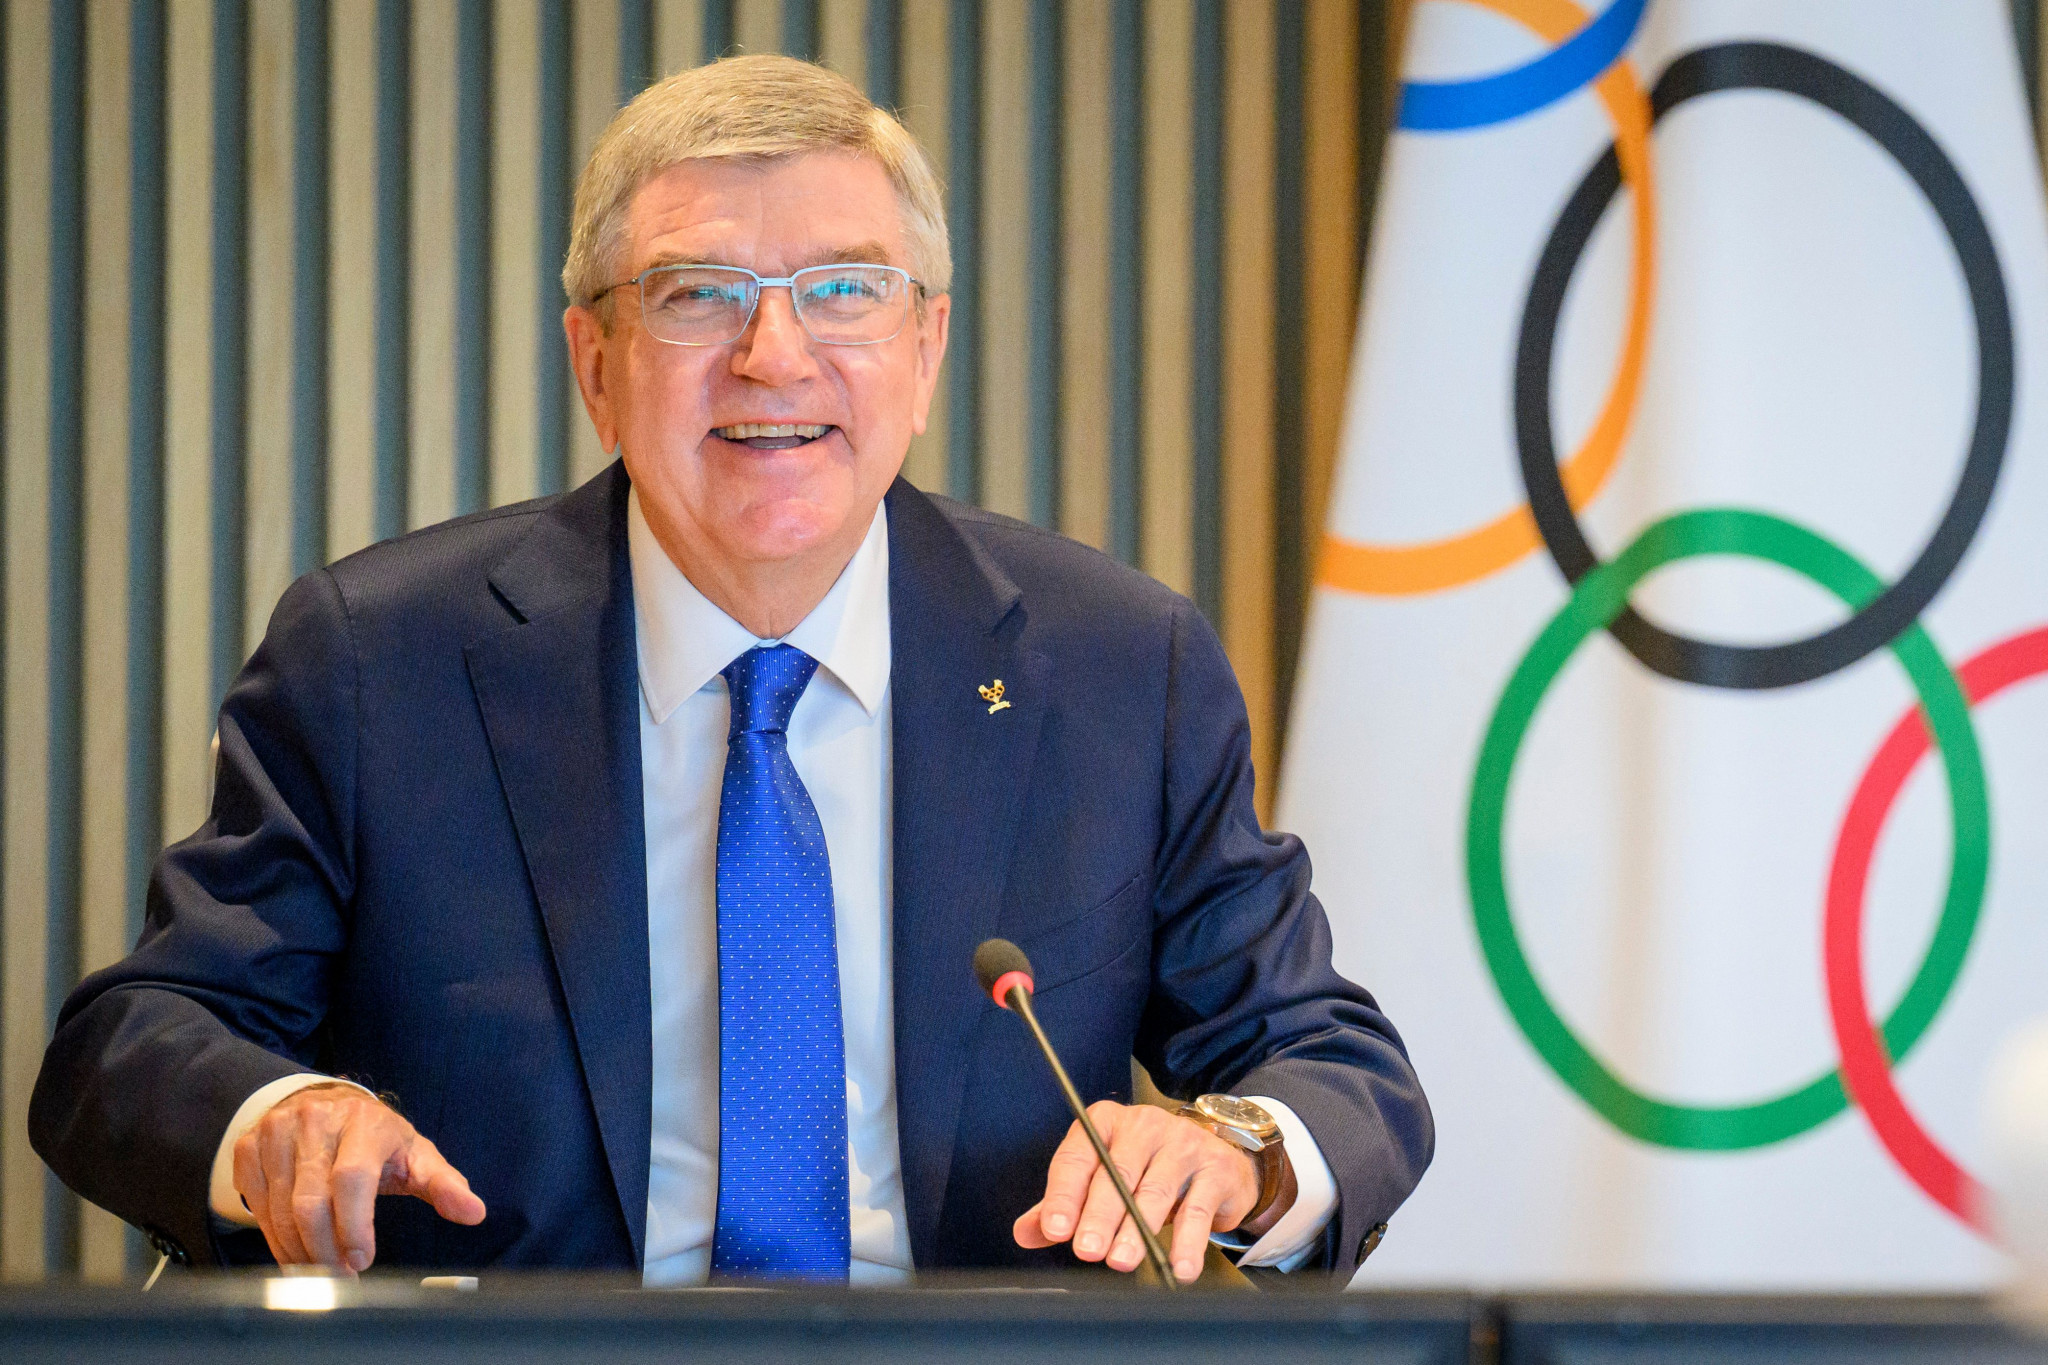 IOC President Thomas Bach said he had 